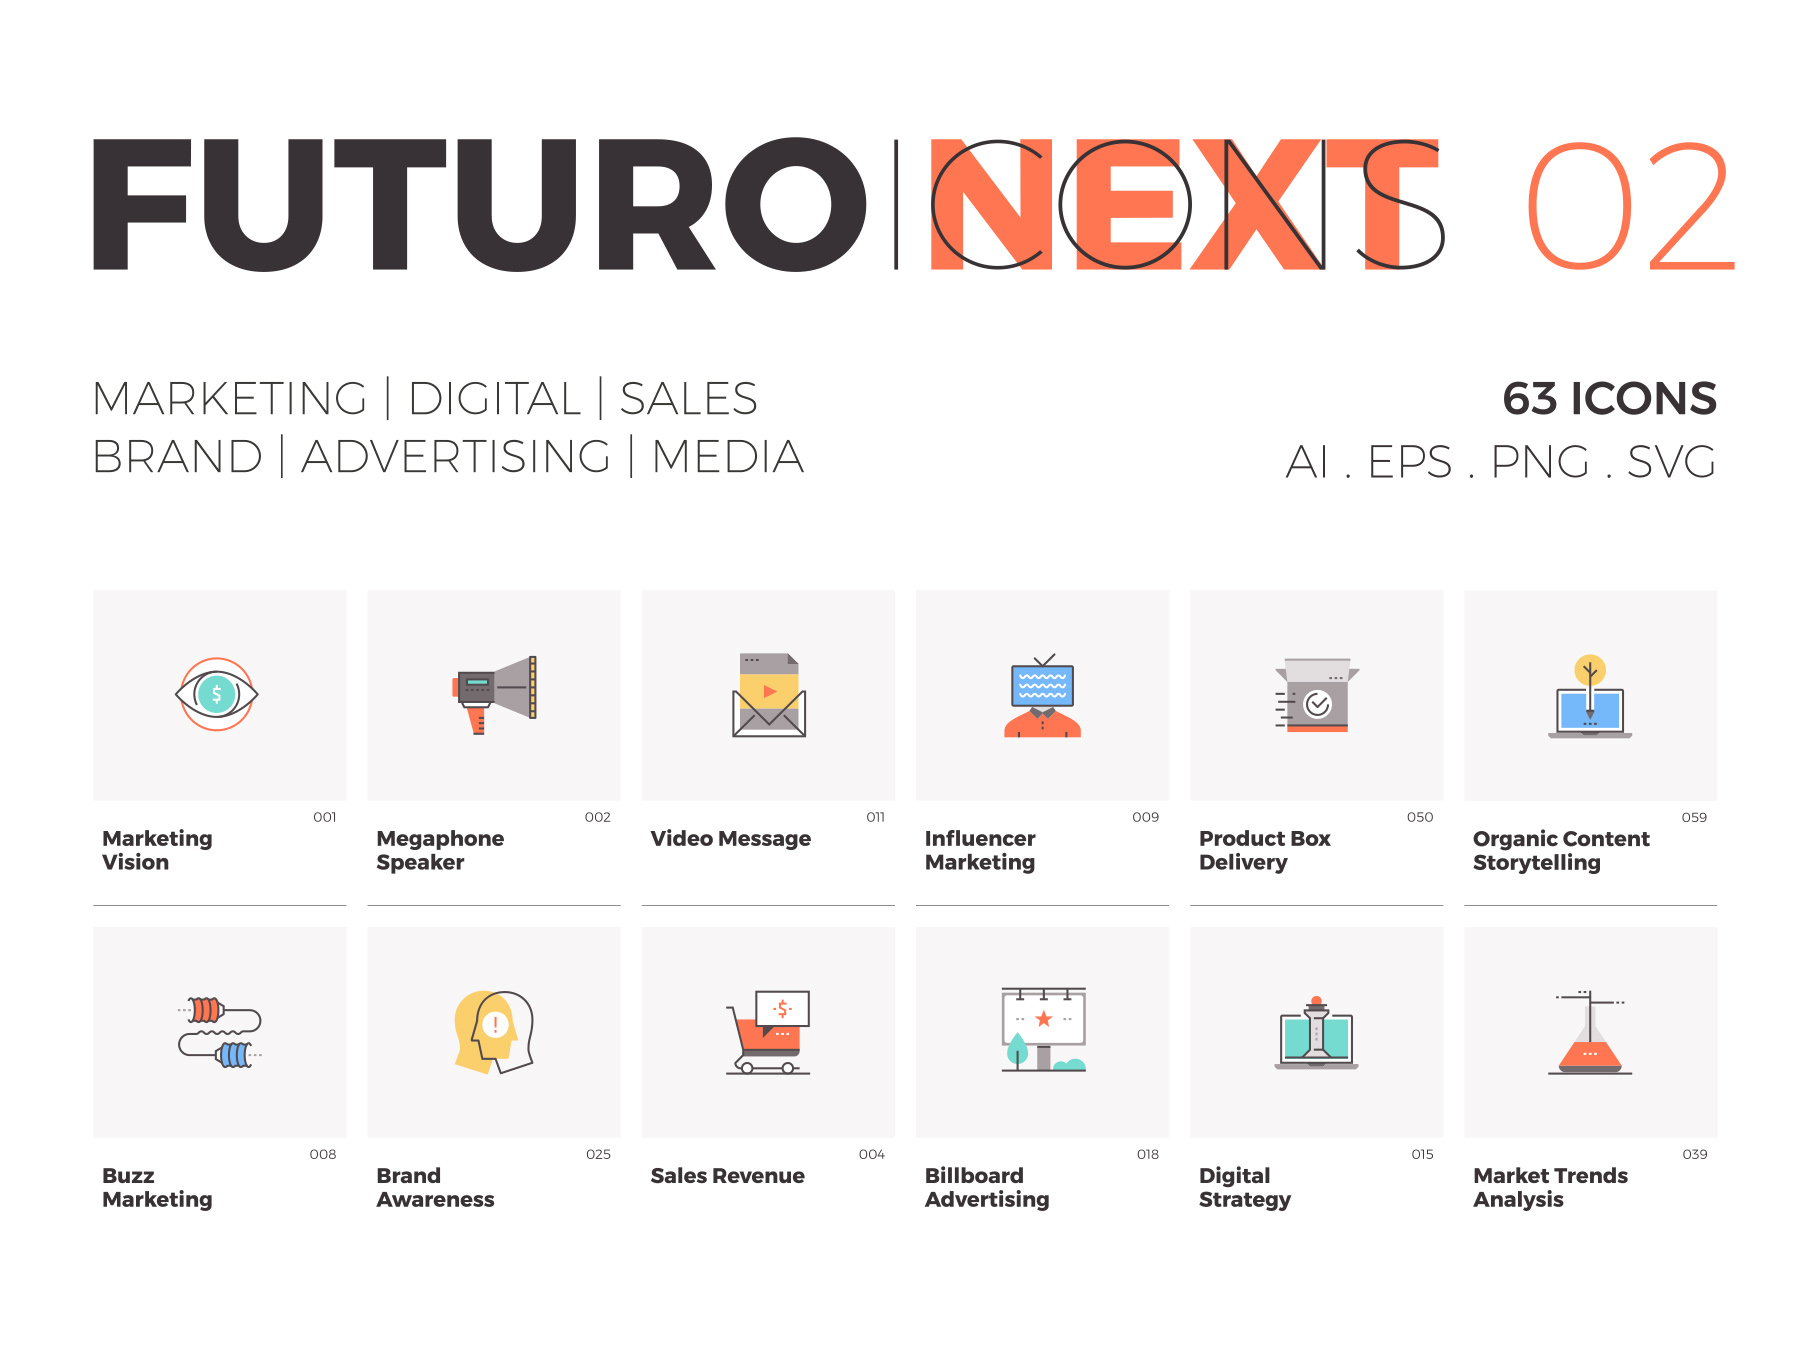 未来风格的市场营销图标套装Futuro Next Marke